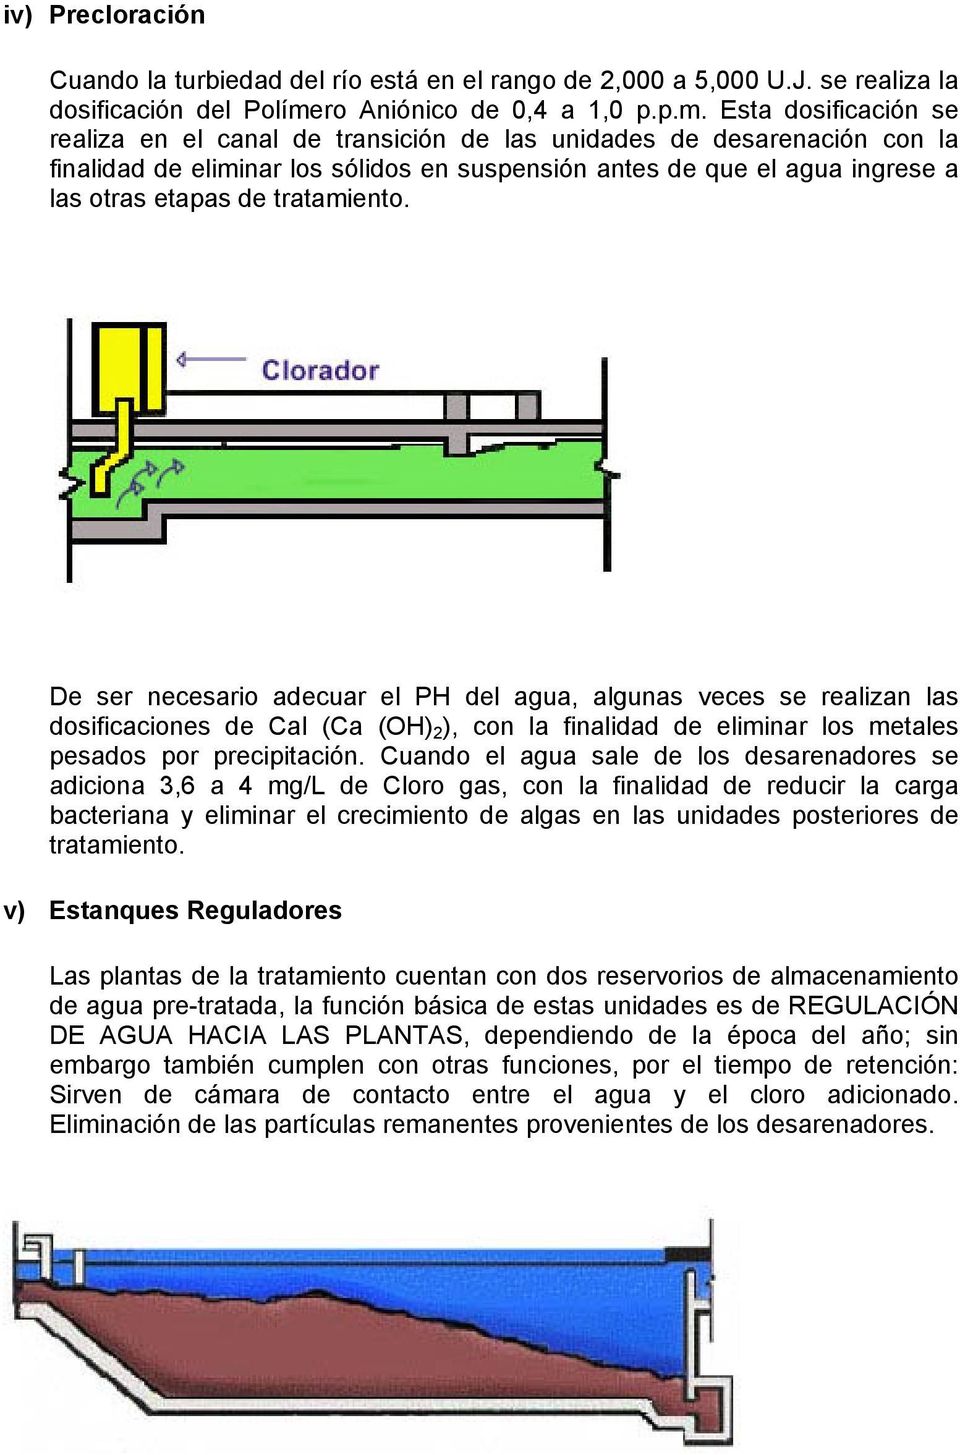 Esta dosificación se realiza en el canal de transición de las unidades de desarenación con la finalidad de eliminar los sólidos en suspensión antes de que el agua ingrese a las otras etapas de